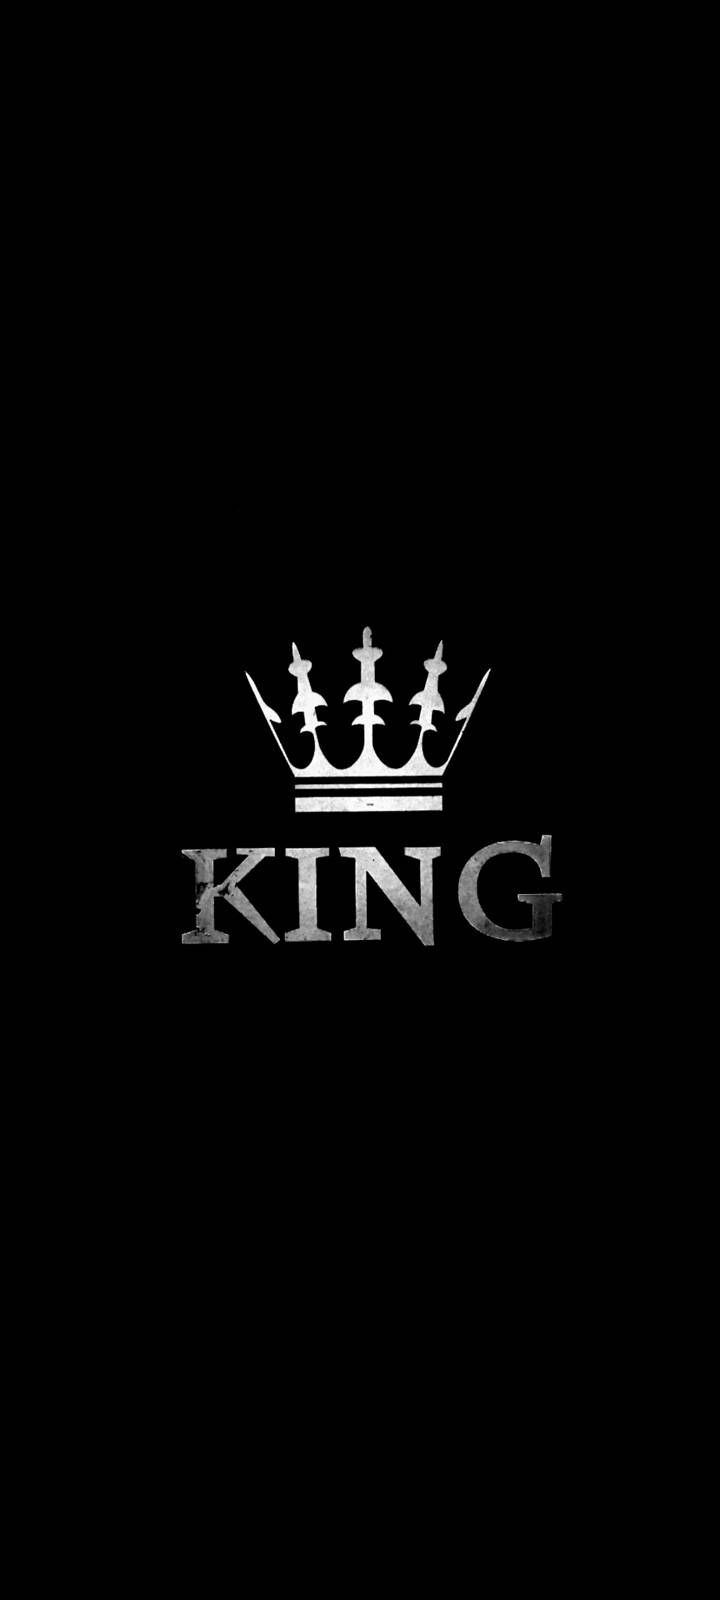 43900 King Crown Stock Photos Pictures  RoyaltyFree Images  iStock  King  crown vector King crown isolated King crown logo